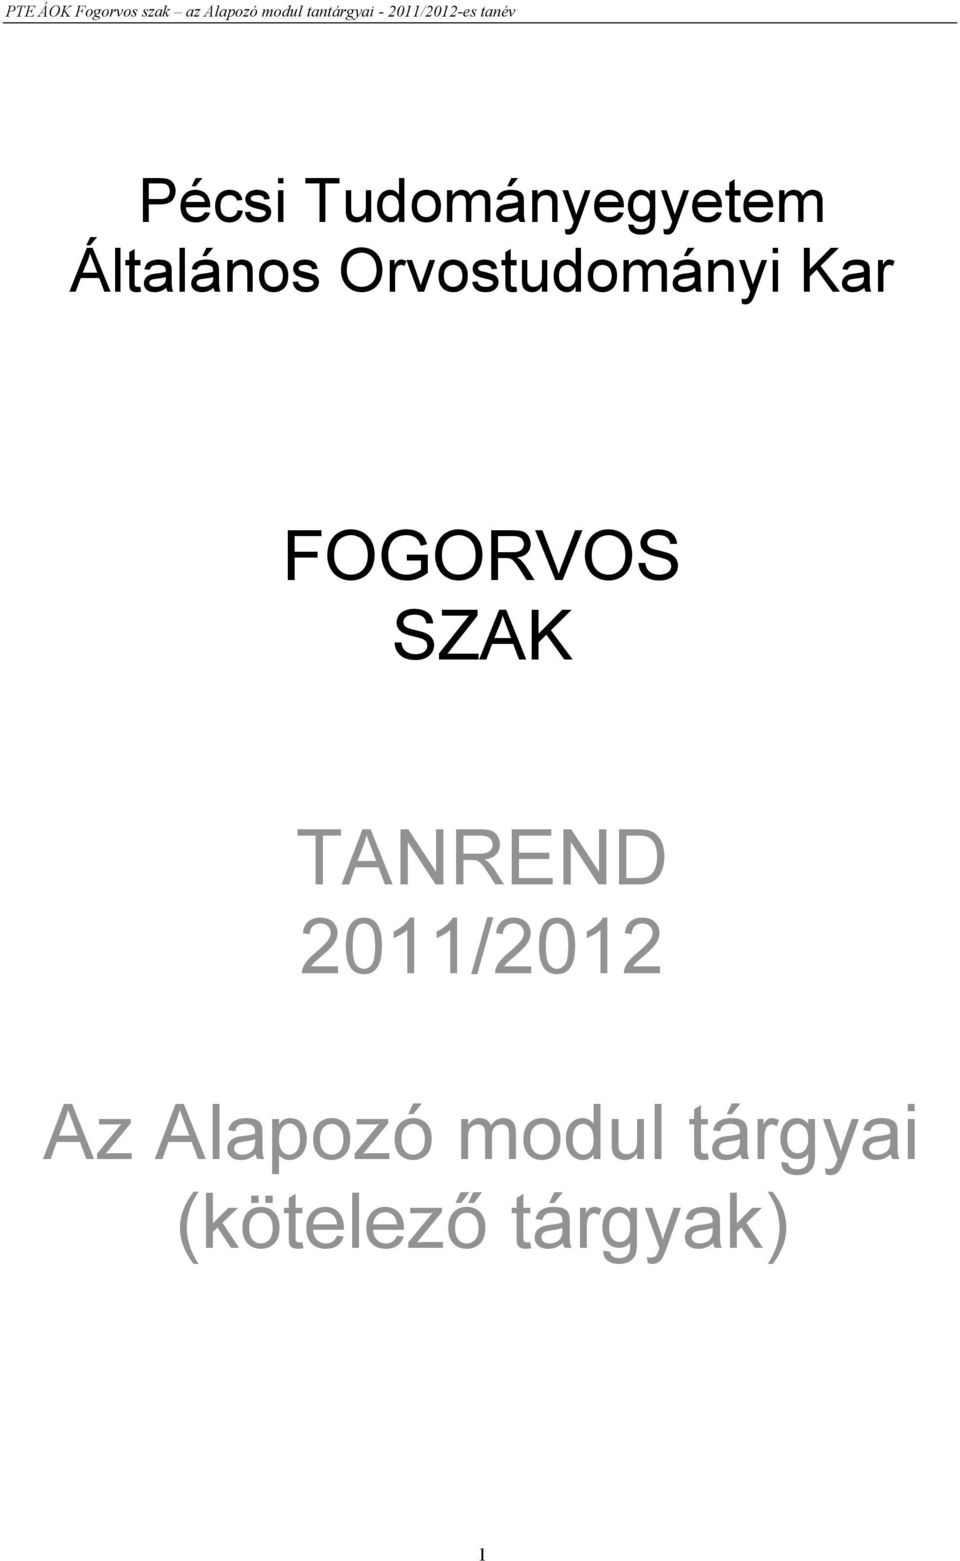 SZAK TANREND 2011/2012 Az